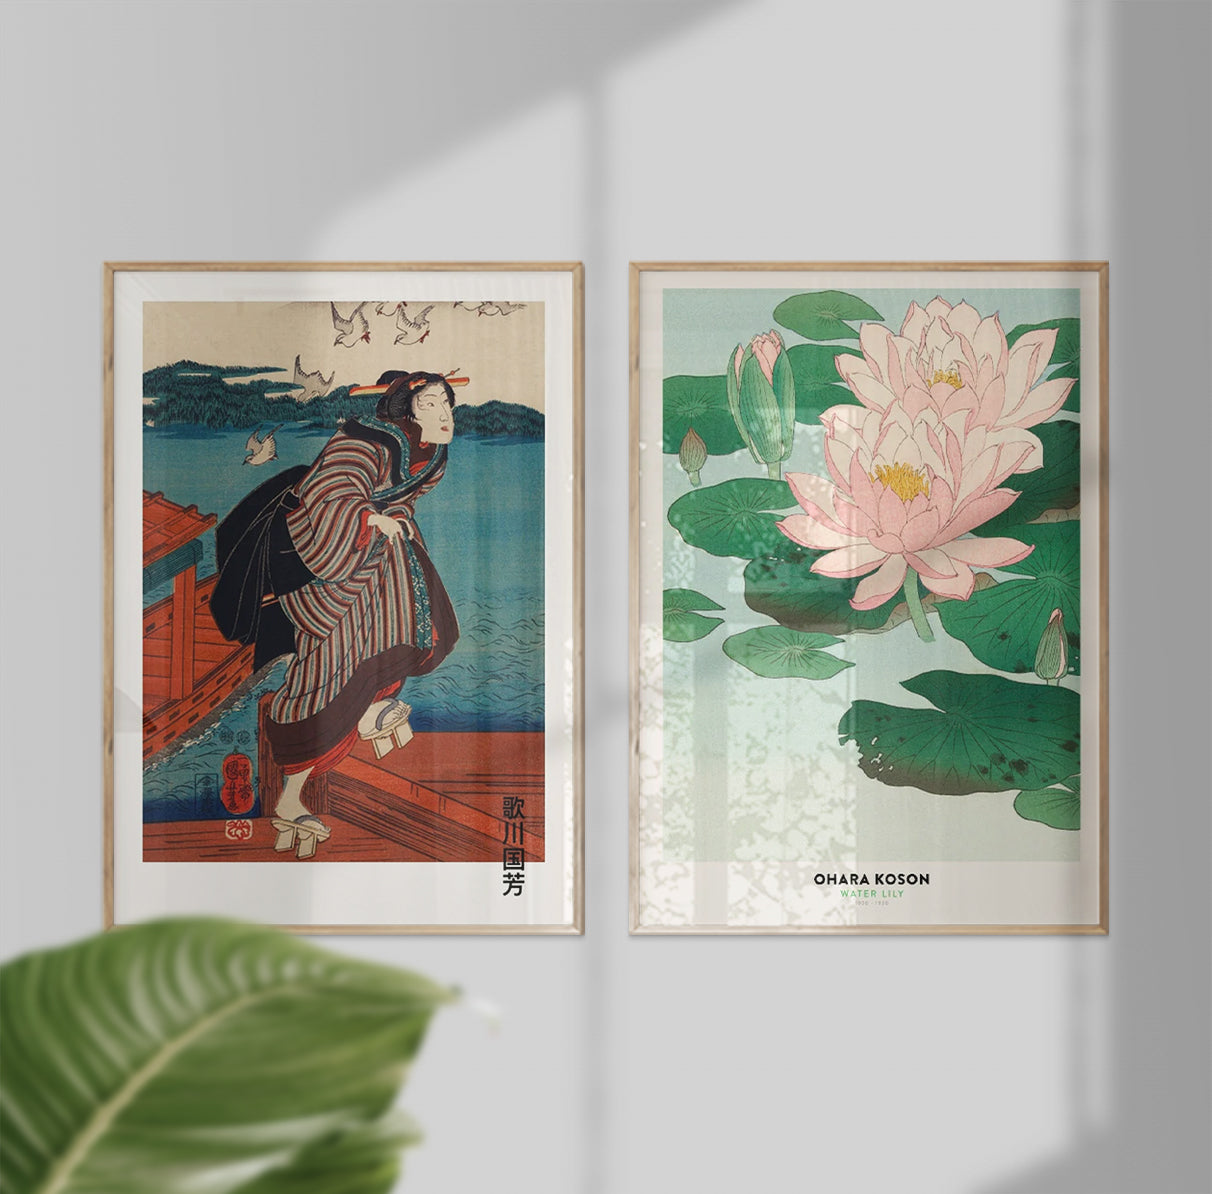 Hokusai & Ohara Koson